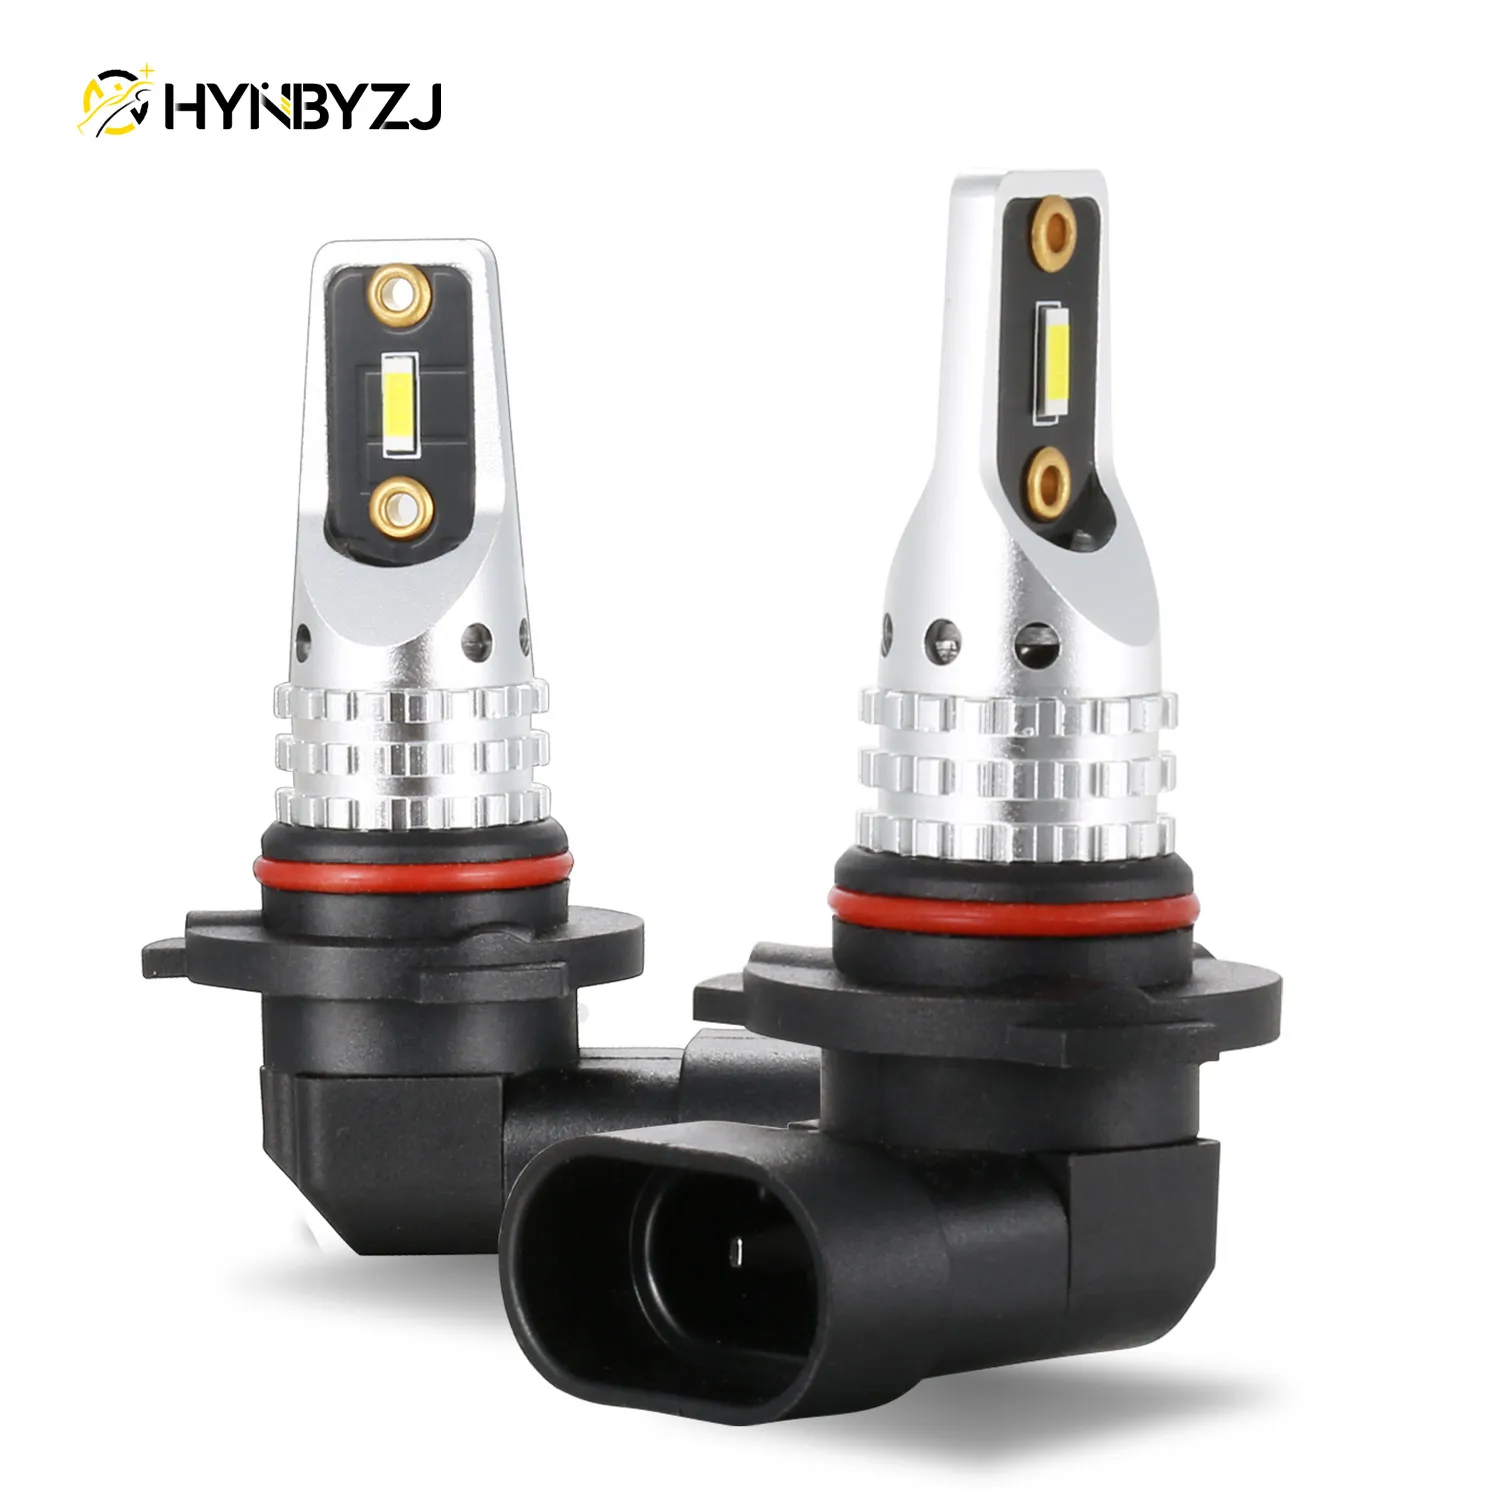 

HYNBYZJ 2PCS H7 H4 LED Fog Light Bulb HB4 9006 HB3 9005 H1 H11 H16 1156 Fog light DRL 3200LM 12V-24V 6000k White